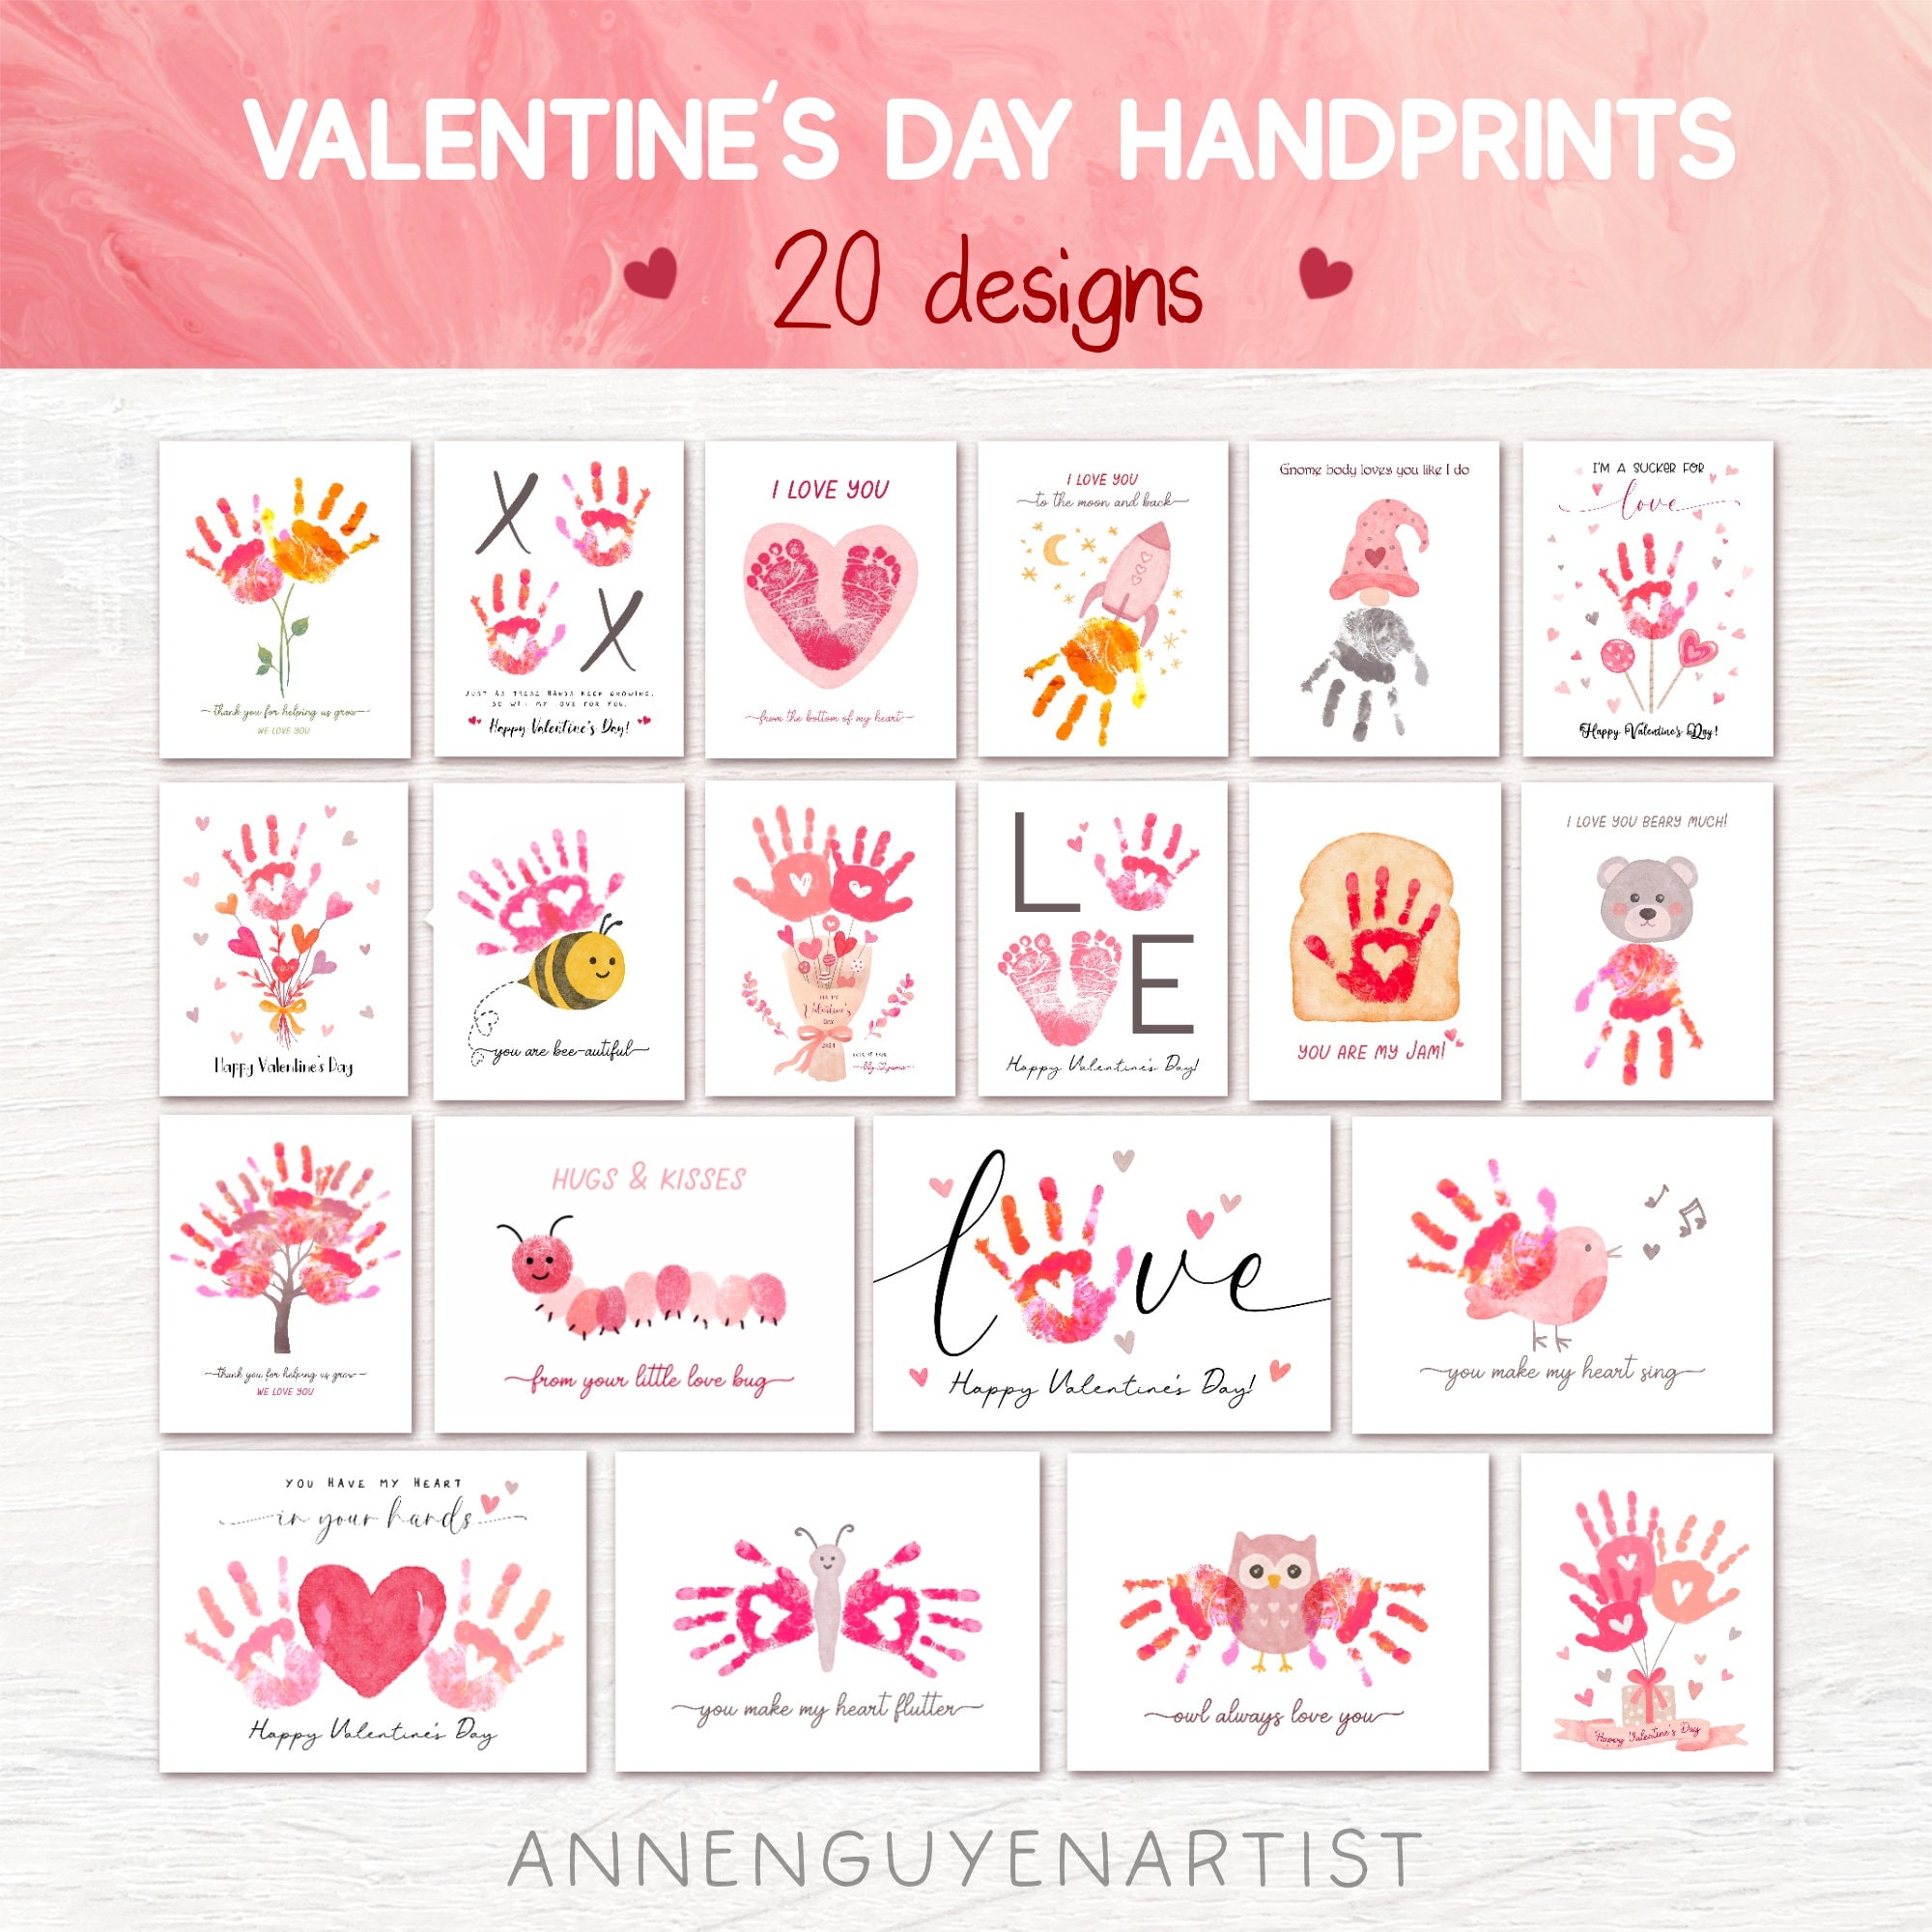 Valentine's Day Handprint Art, I Love You Berry Much, DIY Valentines Day  Craft, DIY Kid Crafts, Valentine's Day Card, Strawberry Handprint 